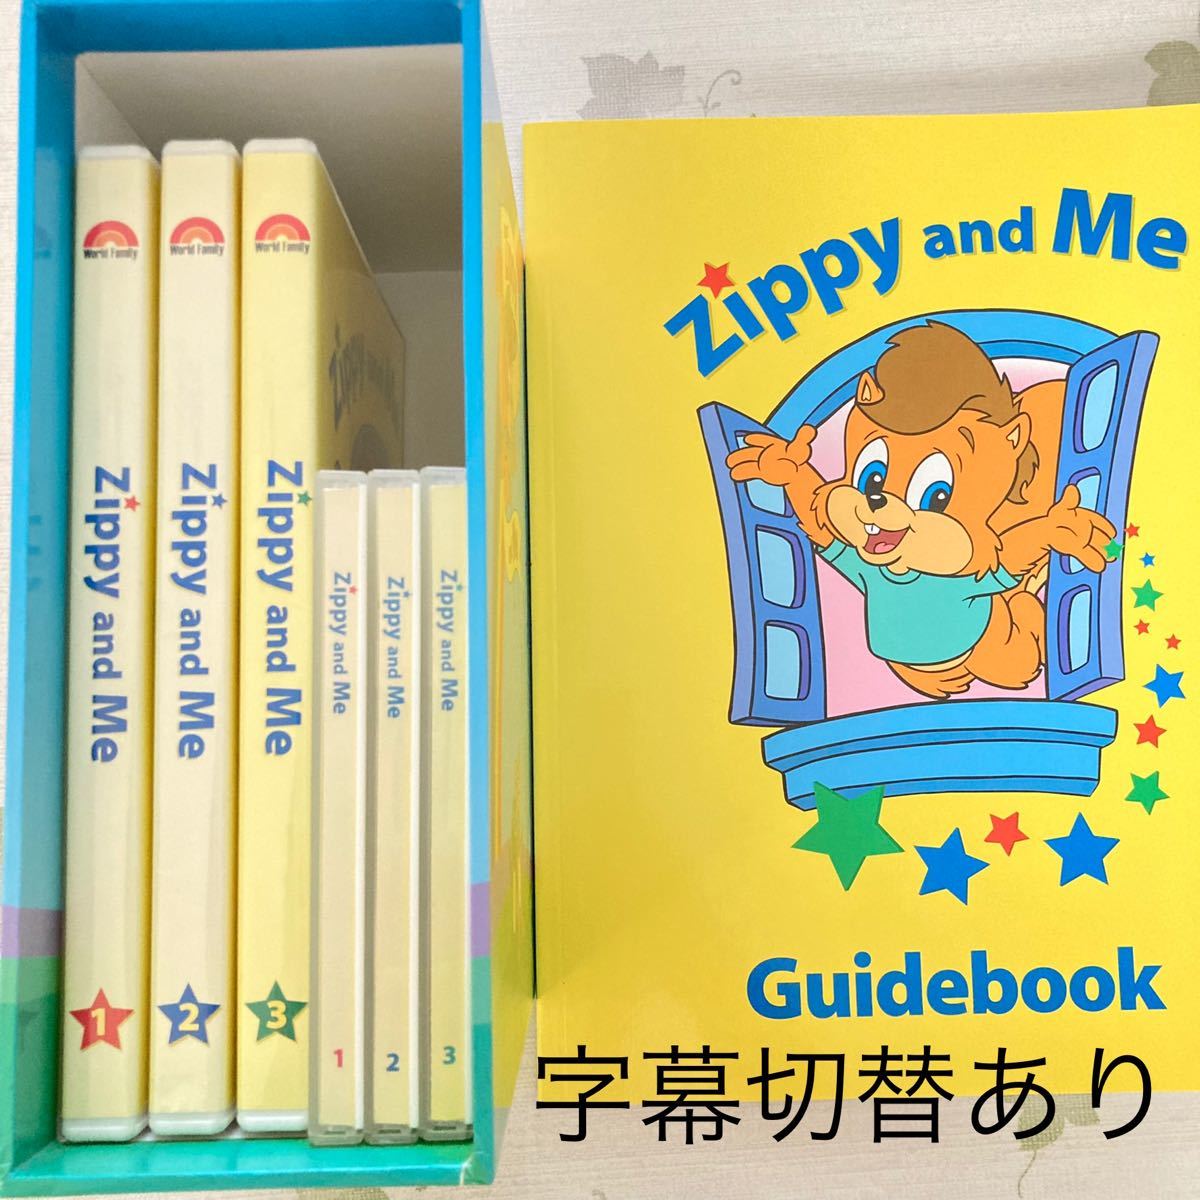 字幕あり DWE zippy and me DVD CD ガイドブック-